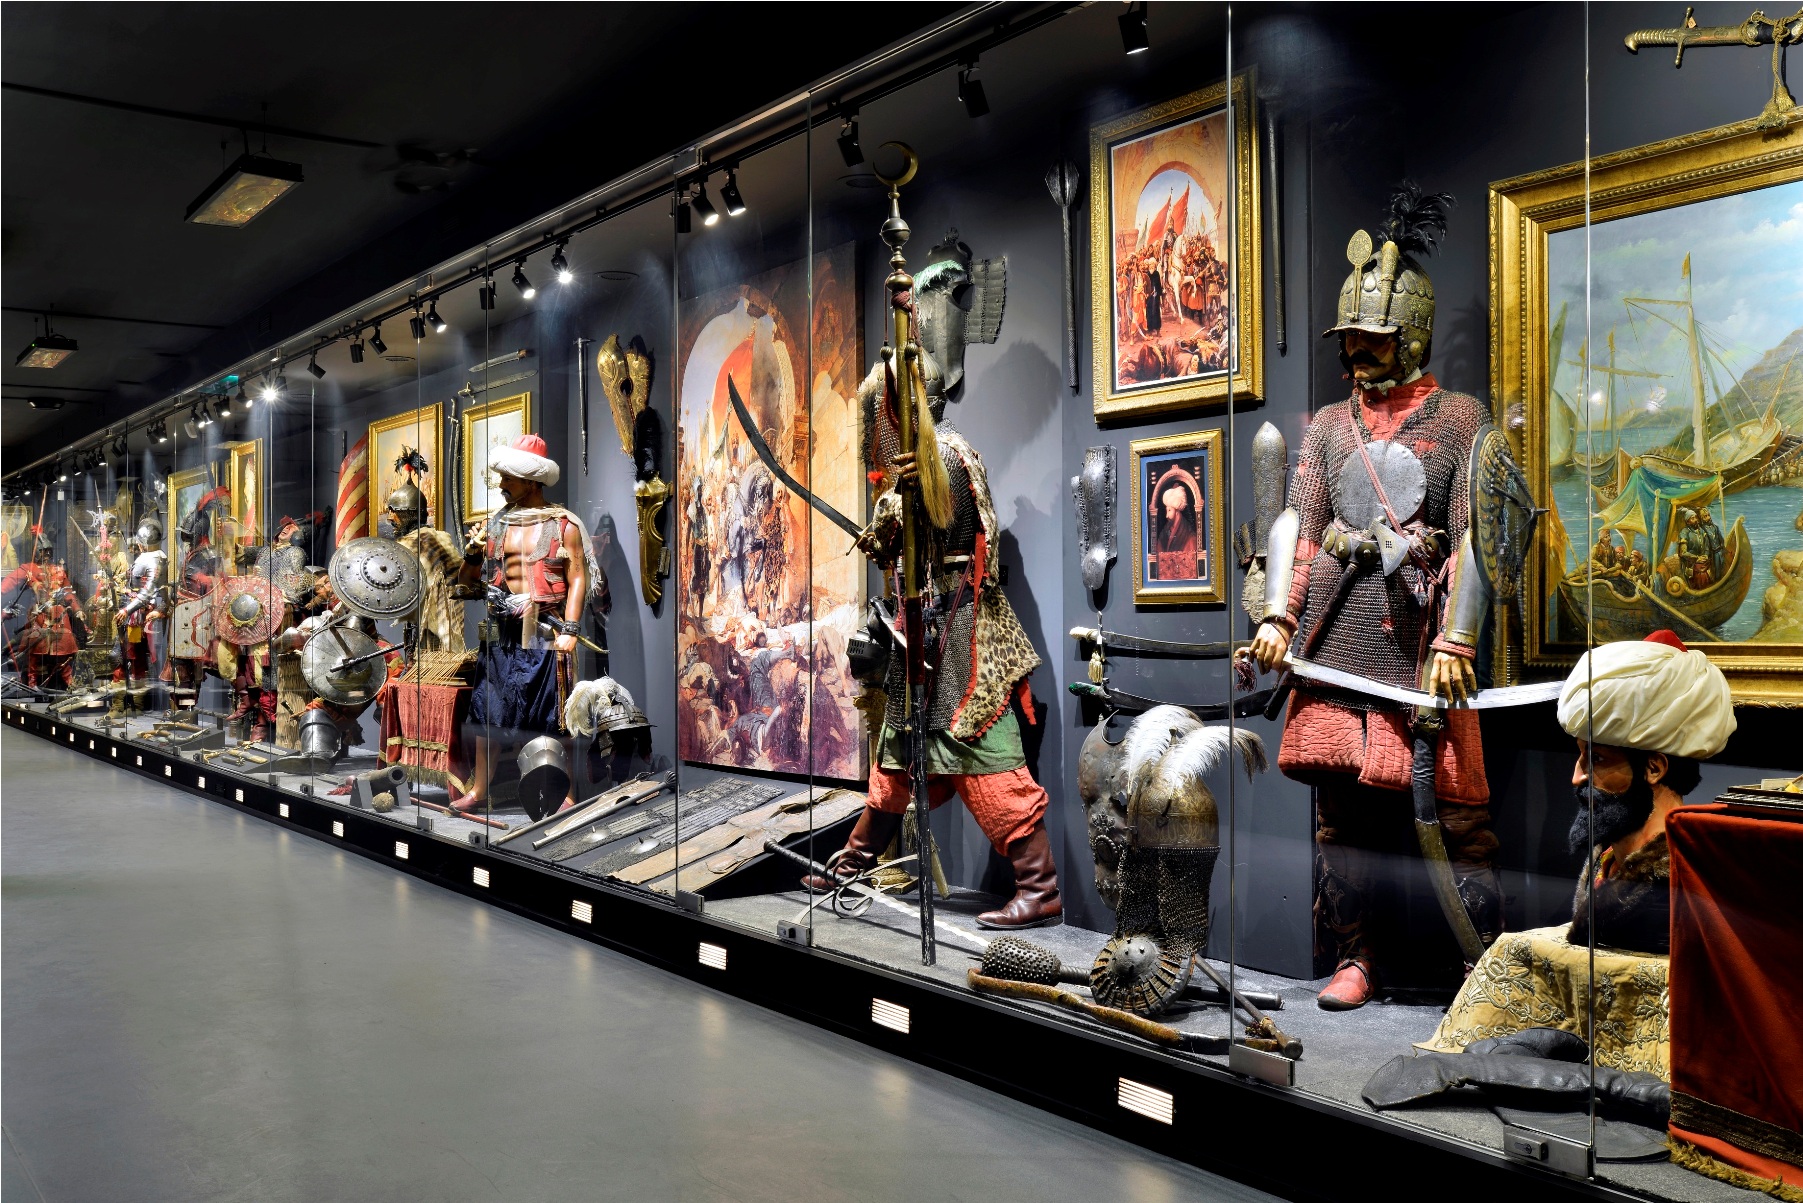 Nejat Çuhadaroğlu Tarafından Hayata Geçirilen Hisart Canlı Tarih Ve Diorama Müzesi 500 Yıllık Bir Tarihe Not Düşüyor